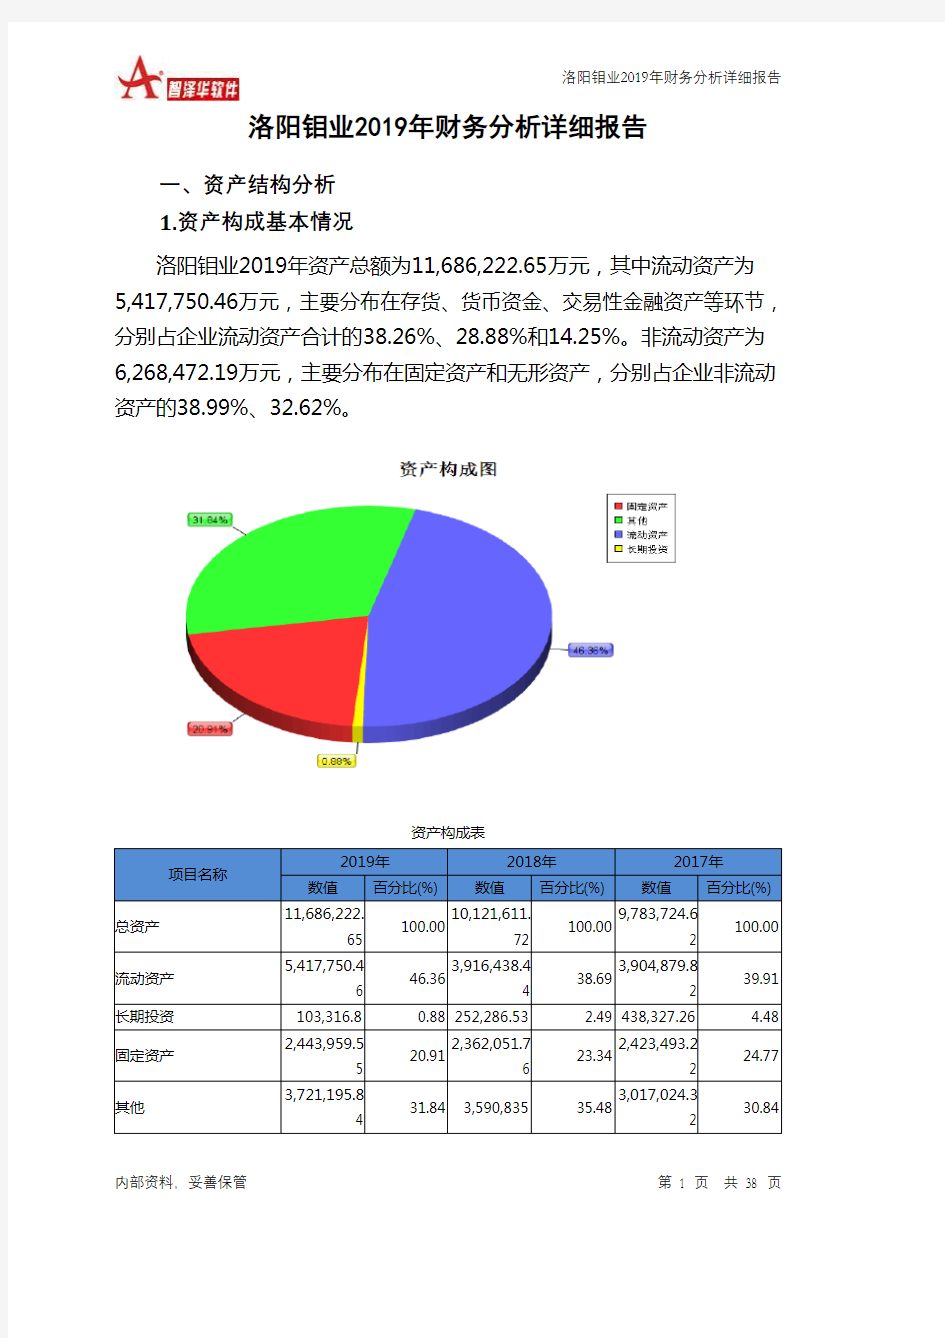 洛阳钼业2019年财务分析详细报告